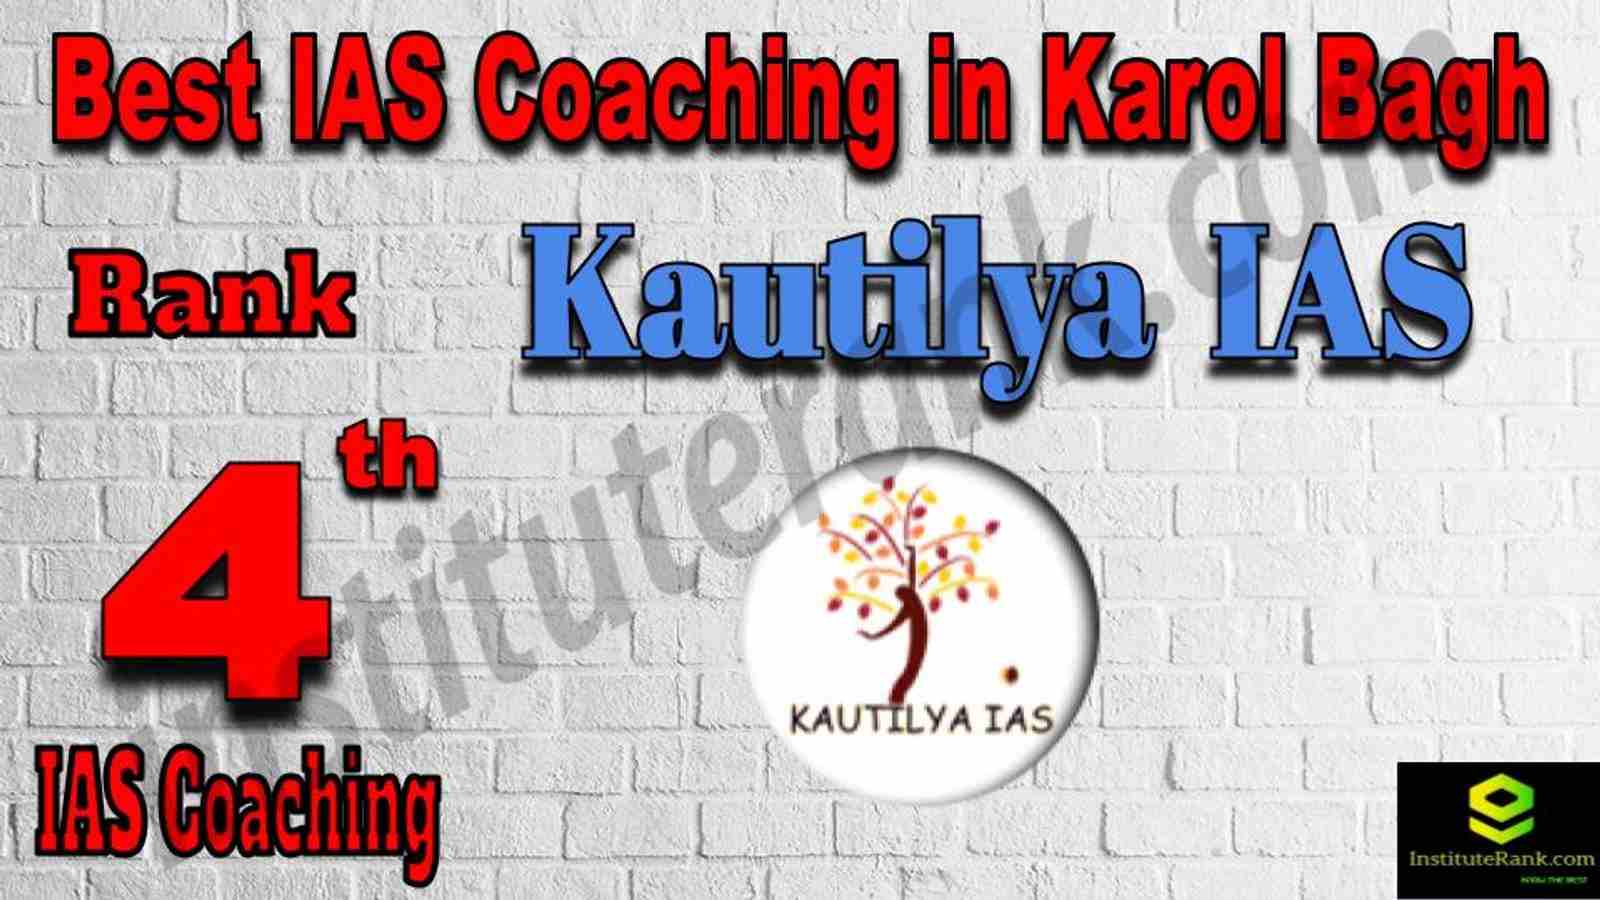 4th Best IAS Coaching in Karol Bagh